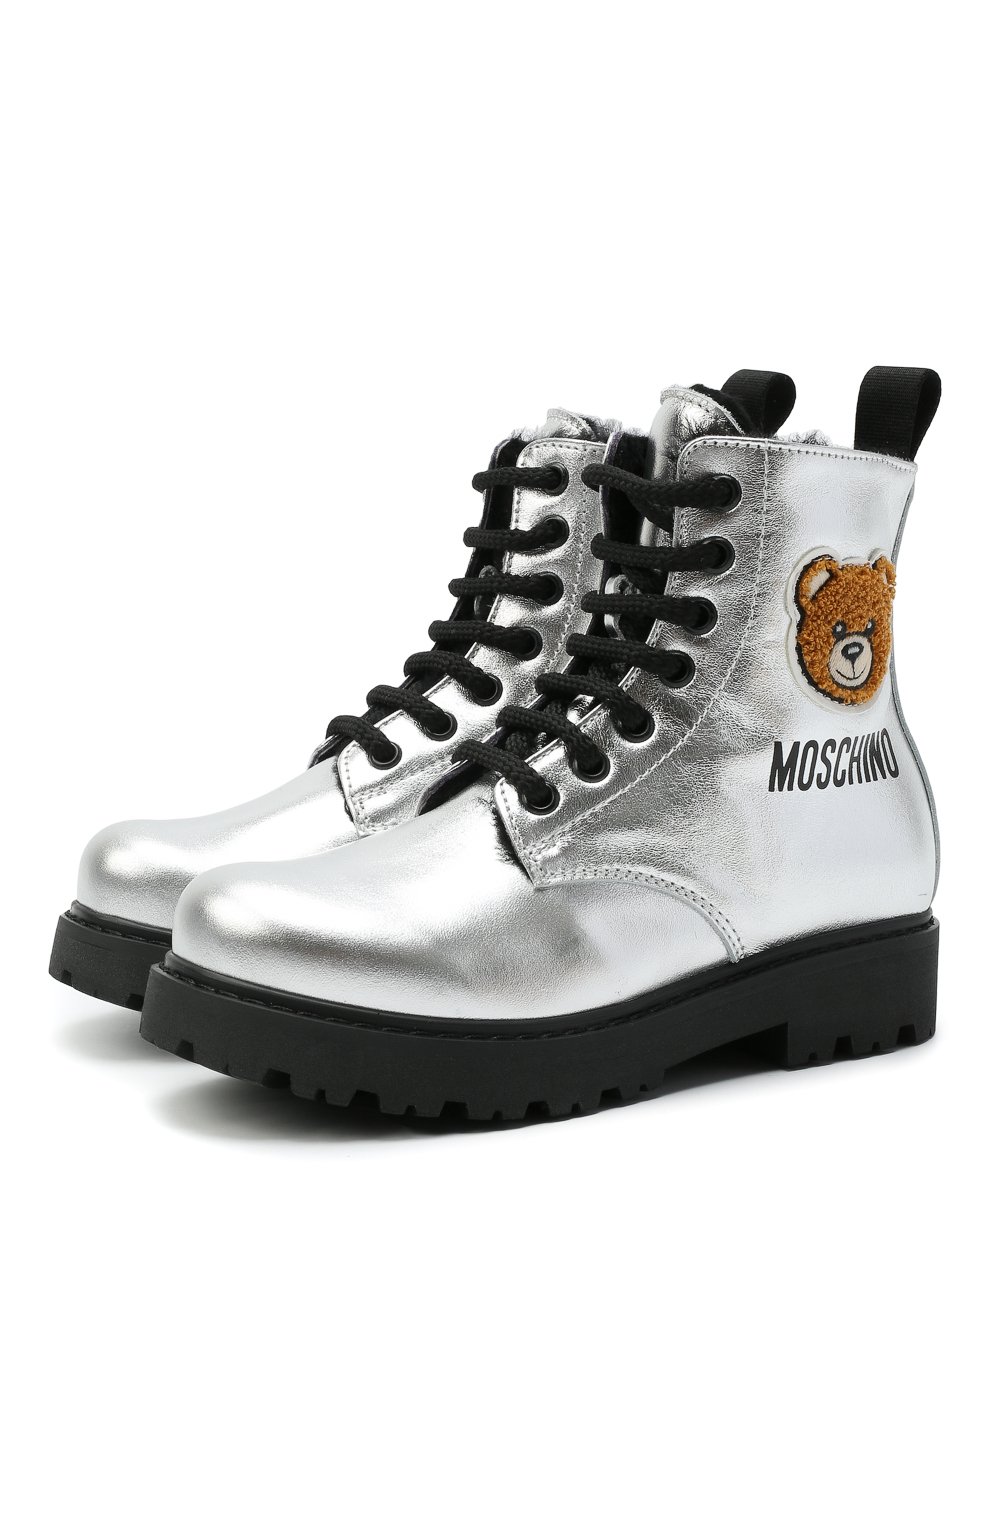 Кожаные ботинки Moschino 68927/LAMINAT0/28-35